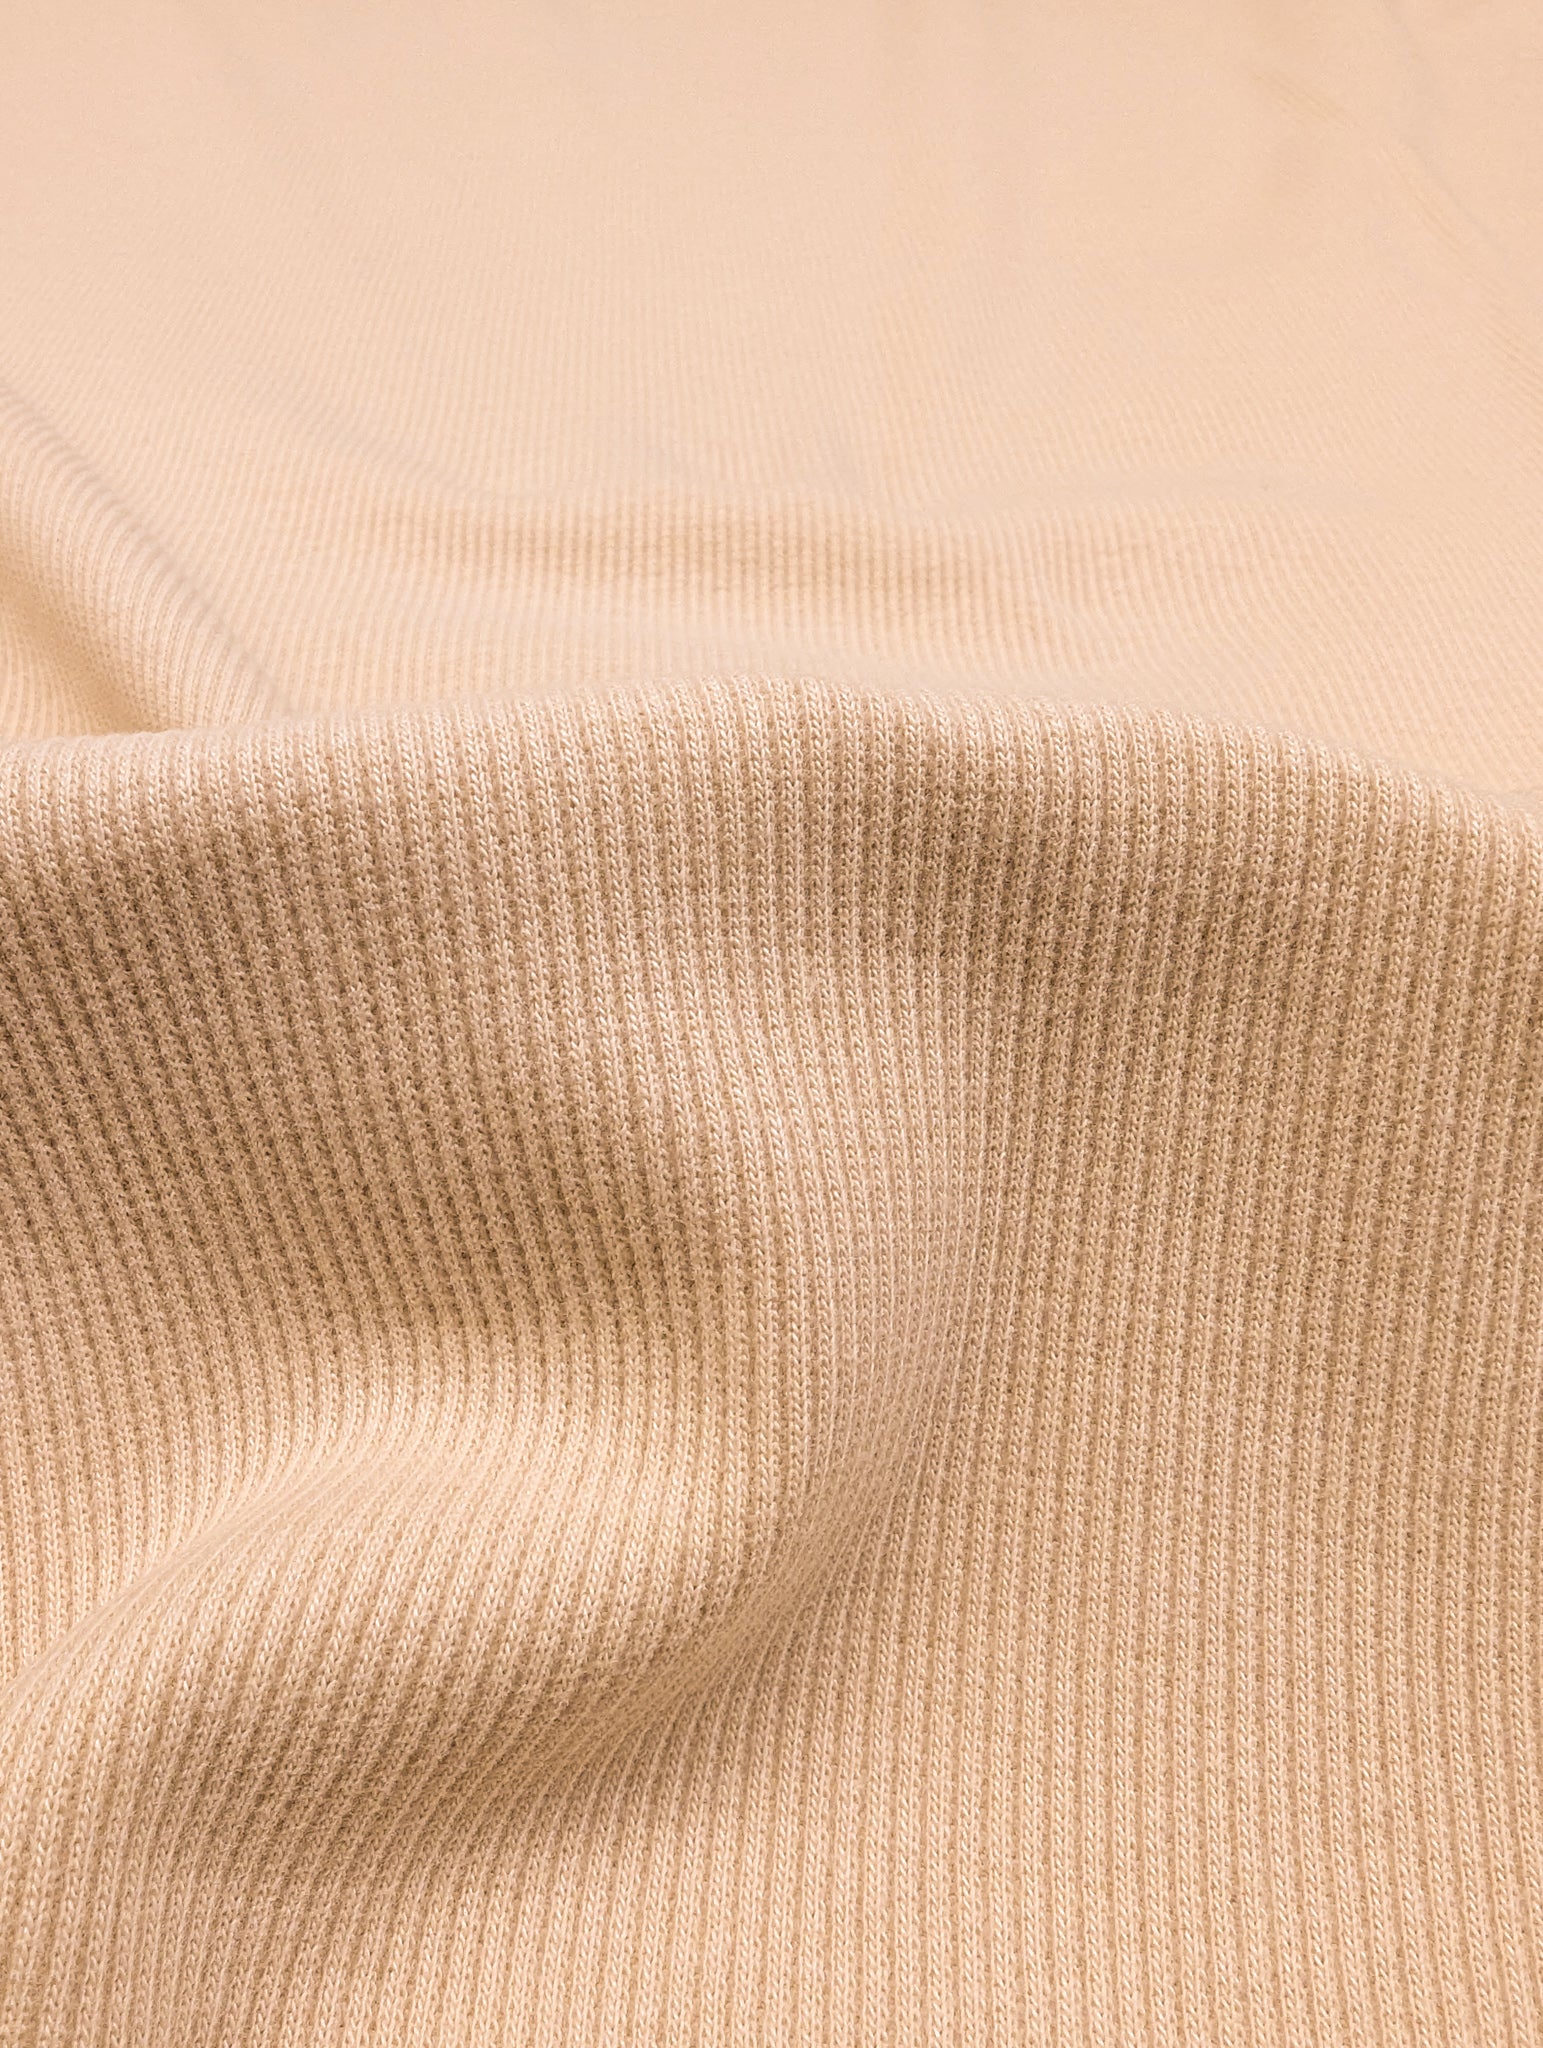 Organic Cotton 2 x 1 Rib Knit - Camel – Sitka Fabrics